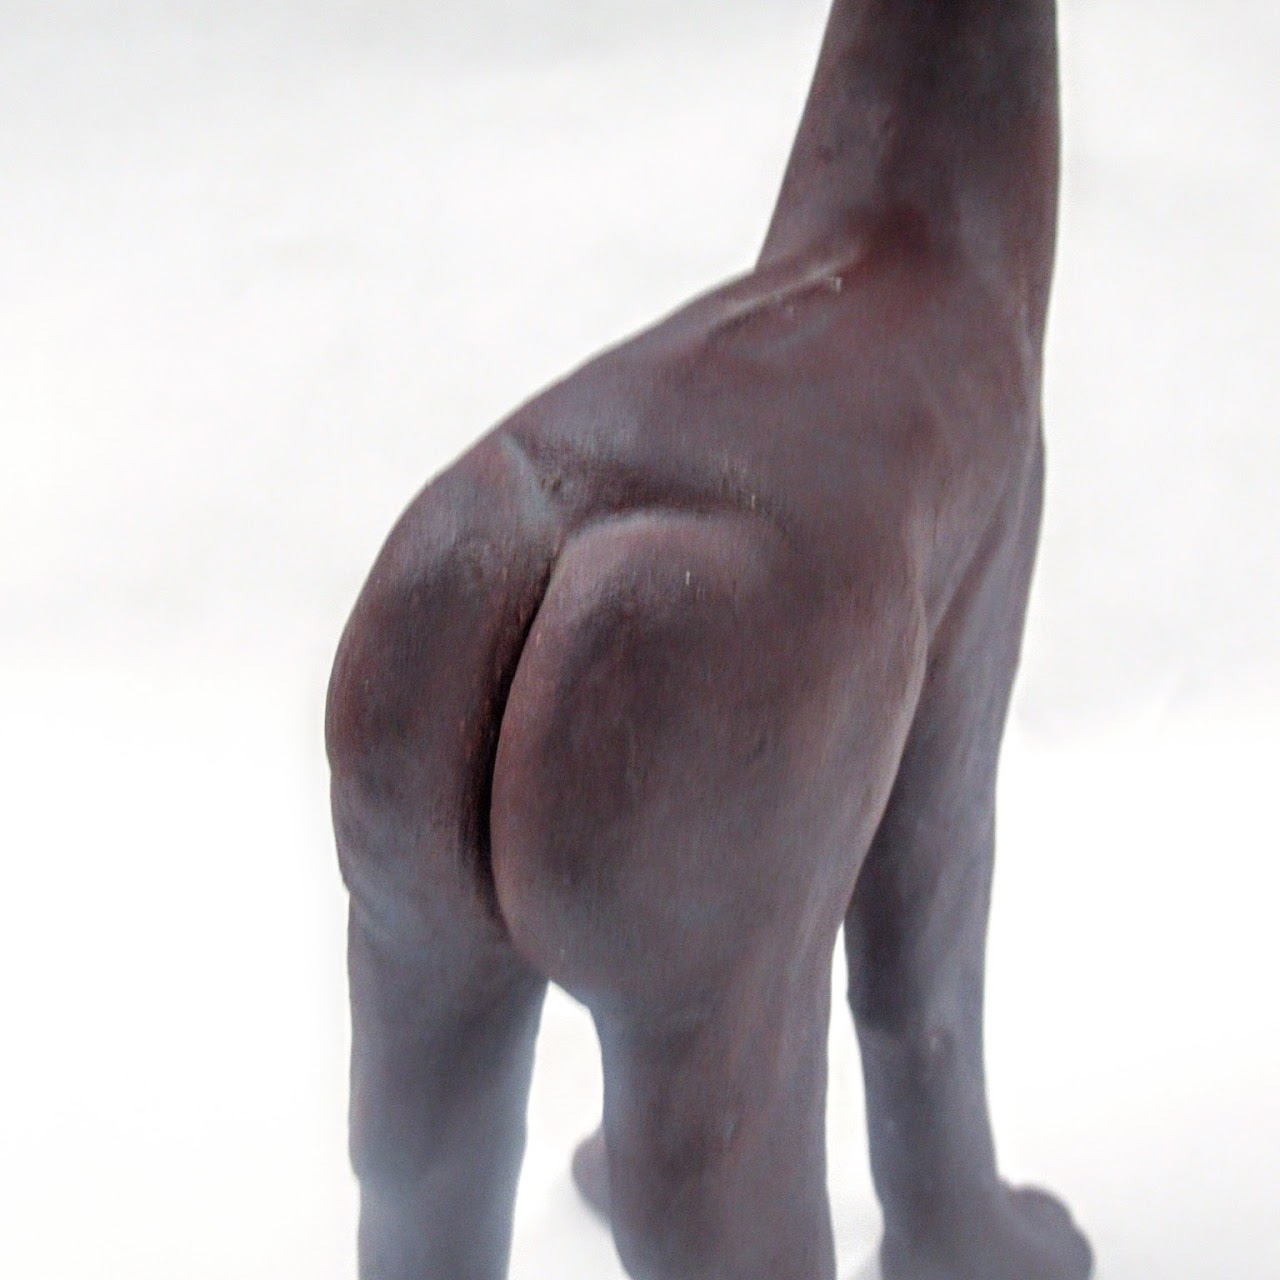 Anthropomorphic Surrealist Signed Studio Ceramic Sculpture